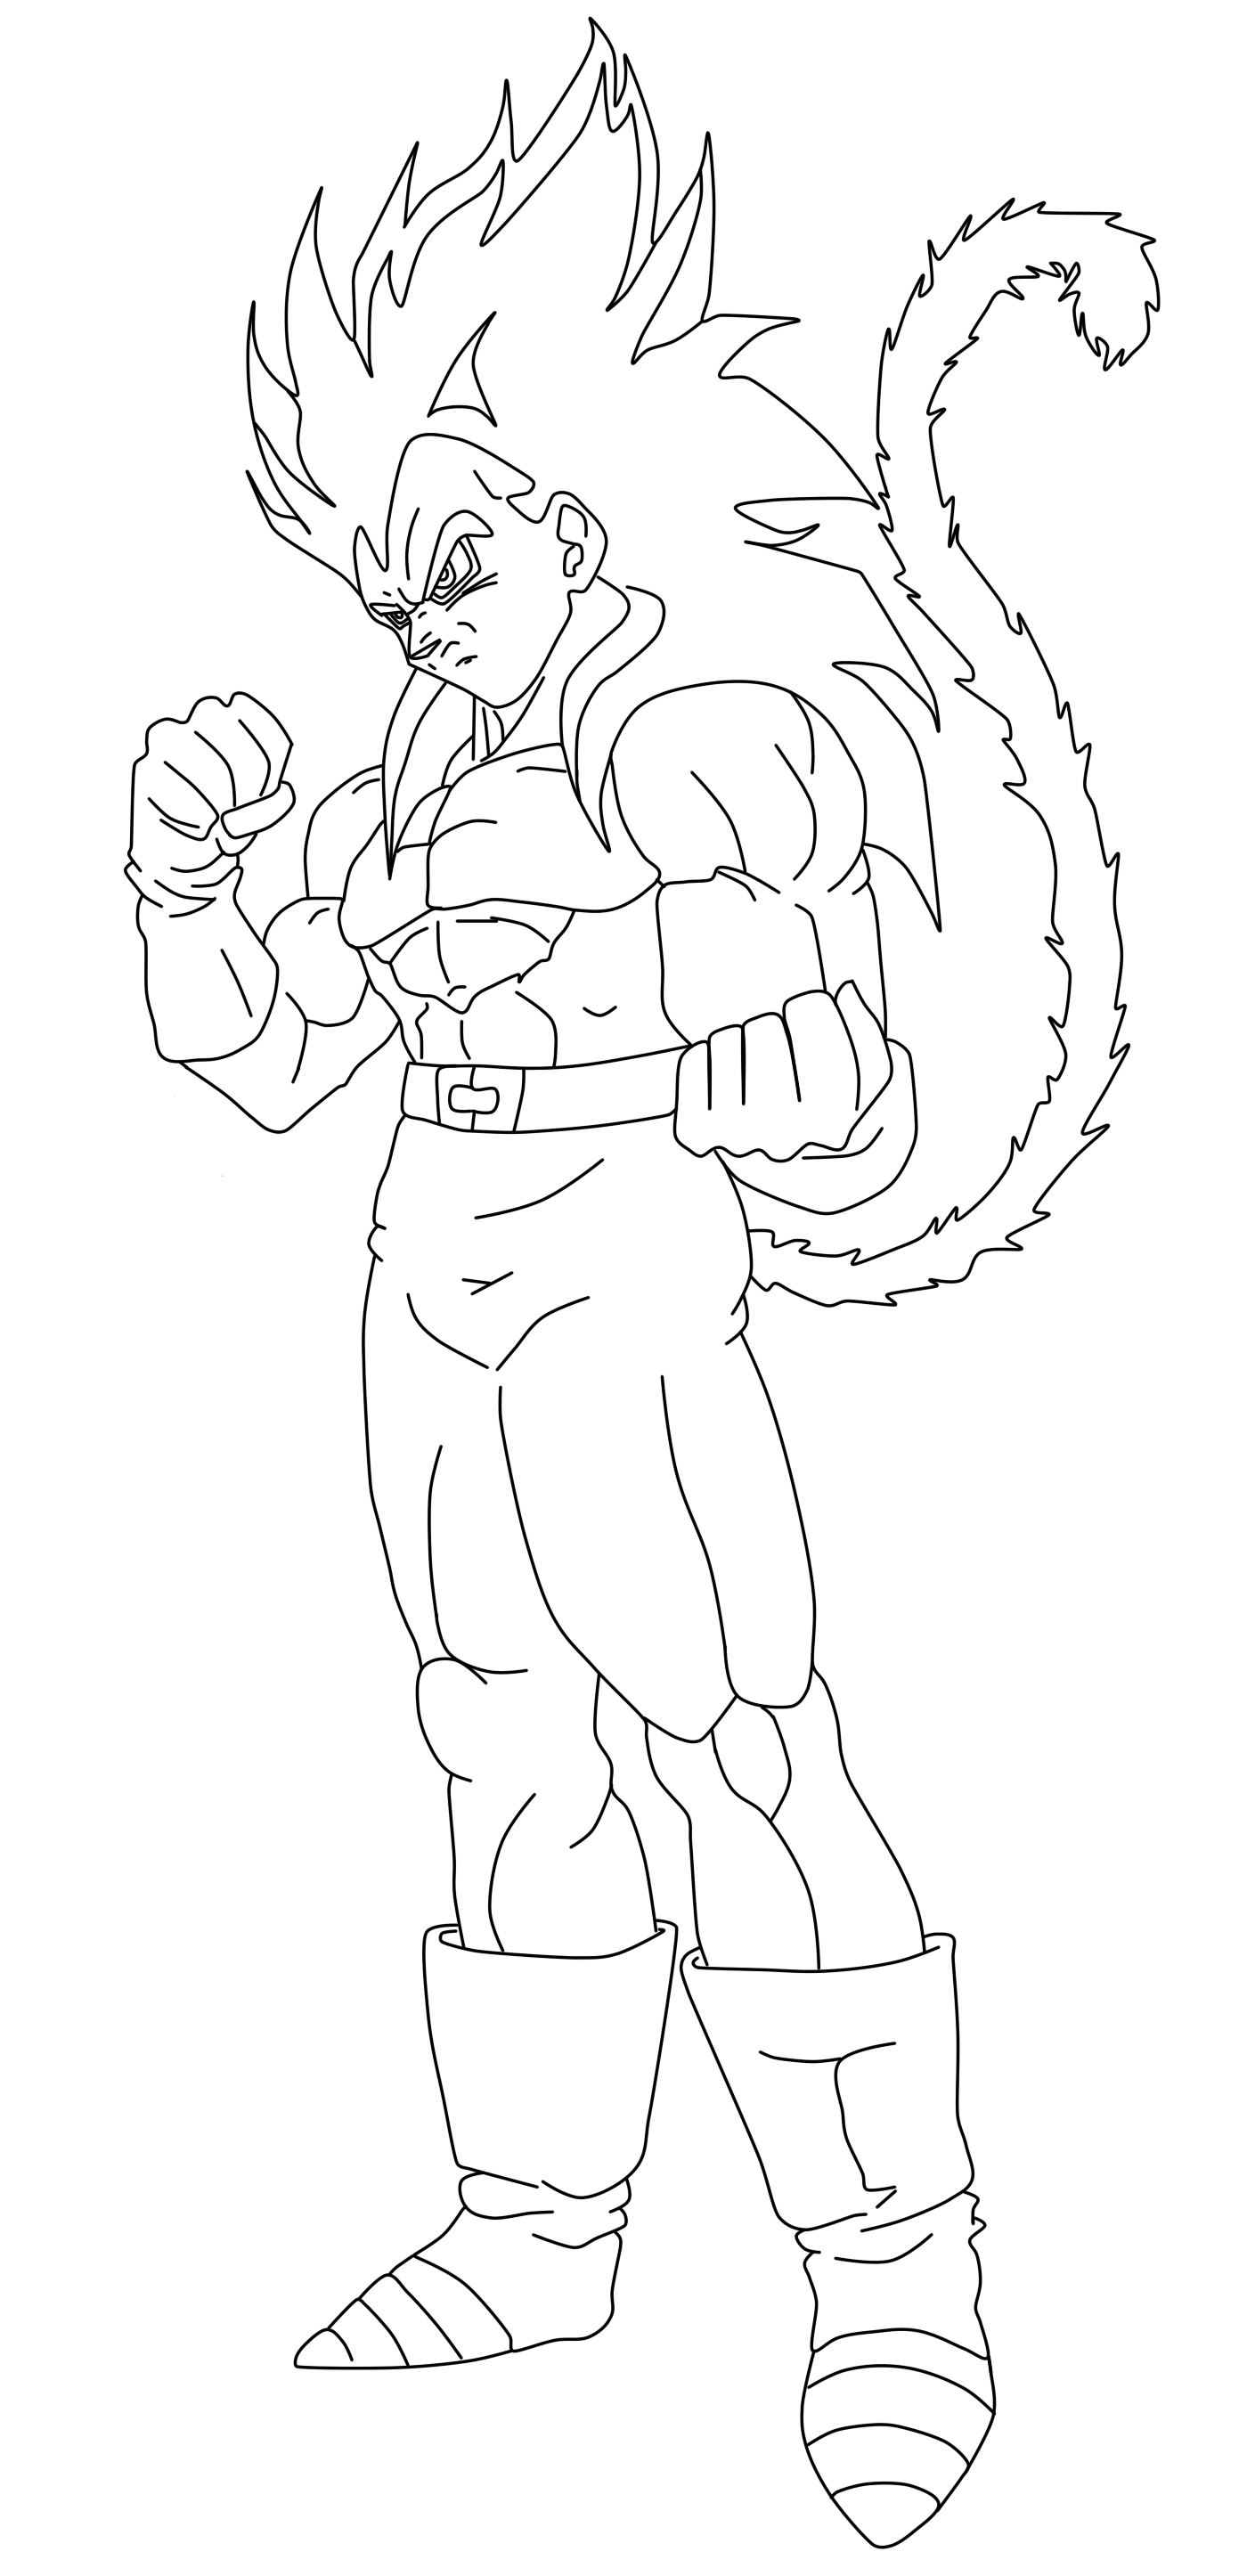 Goku Super Saiyan 4 by ProRimz on DeviantArt